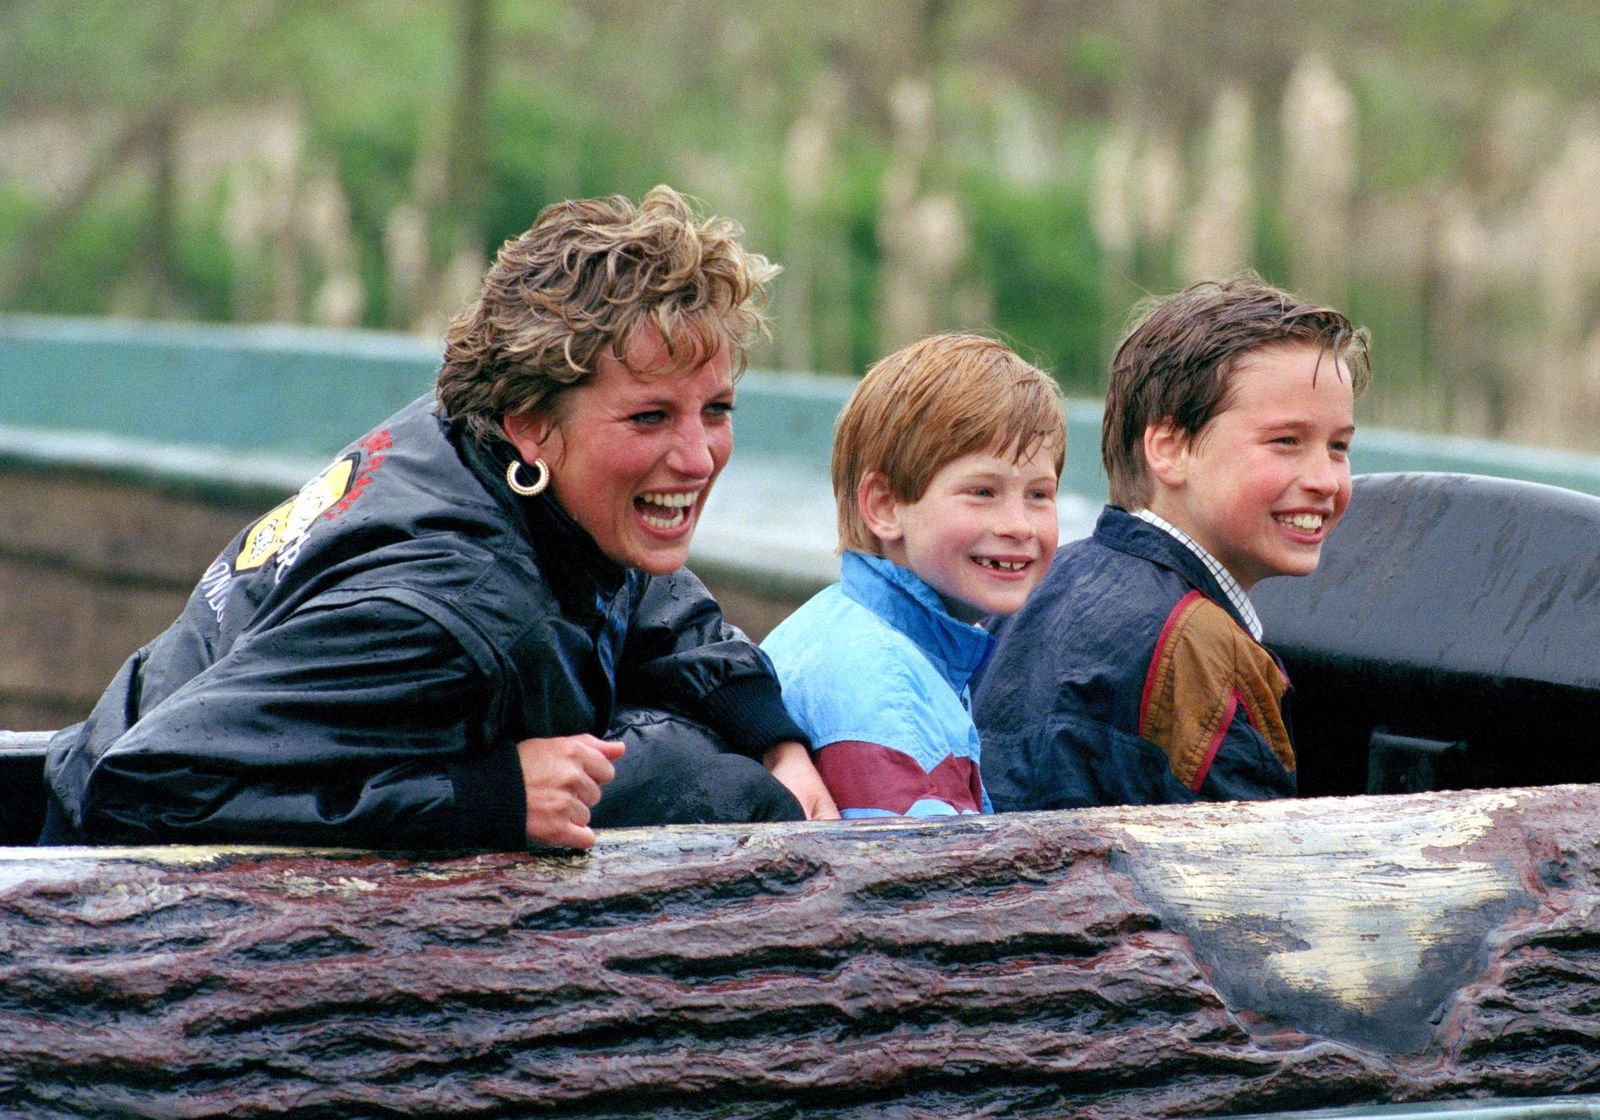 La princesa Diana, el príncipe William y el príncipe Harry en el parque de atracciones "Thorpe Park" el 13 de abril de 1993. | Foto: Getty Images